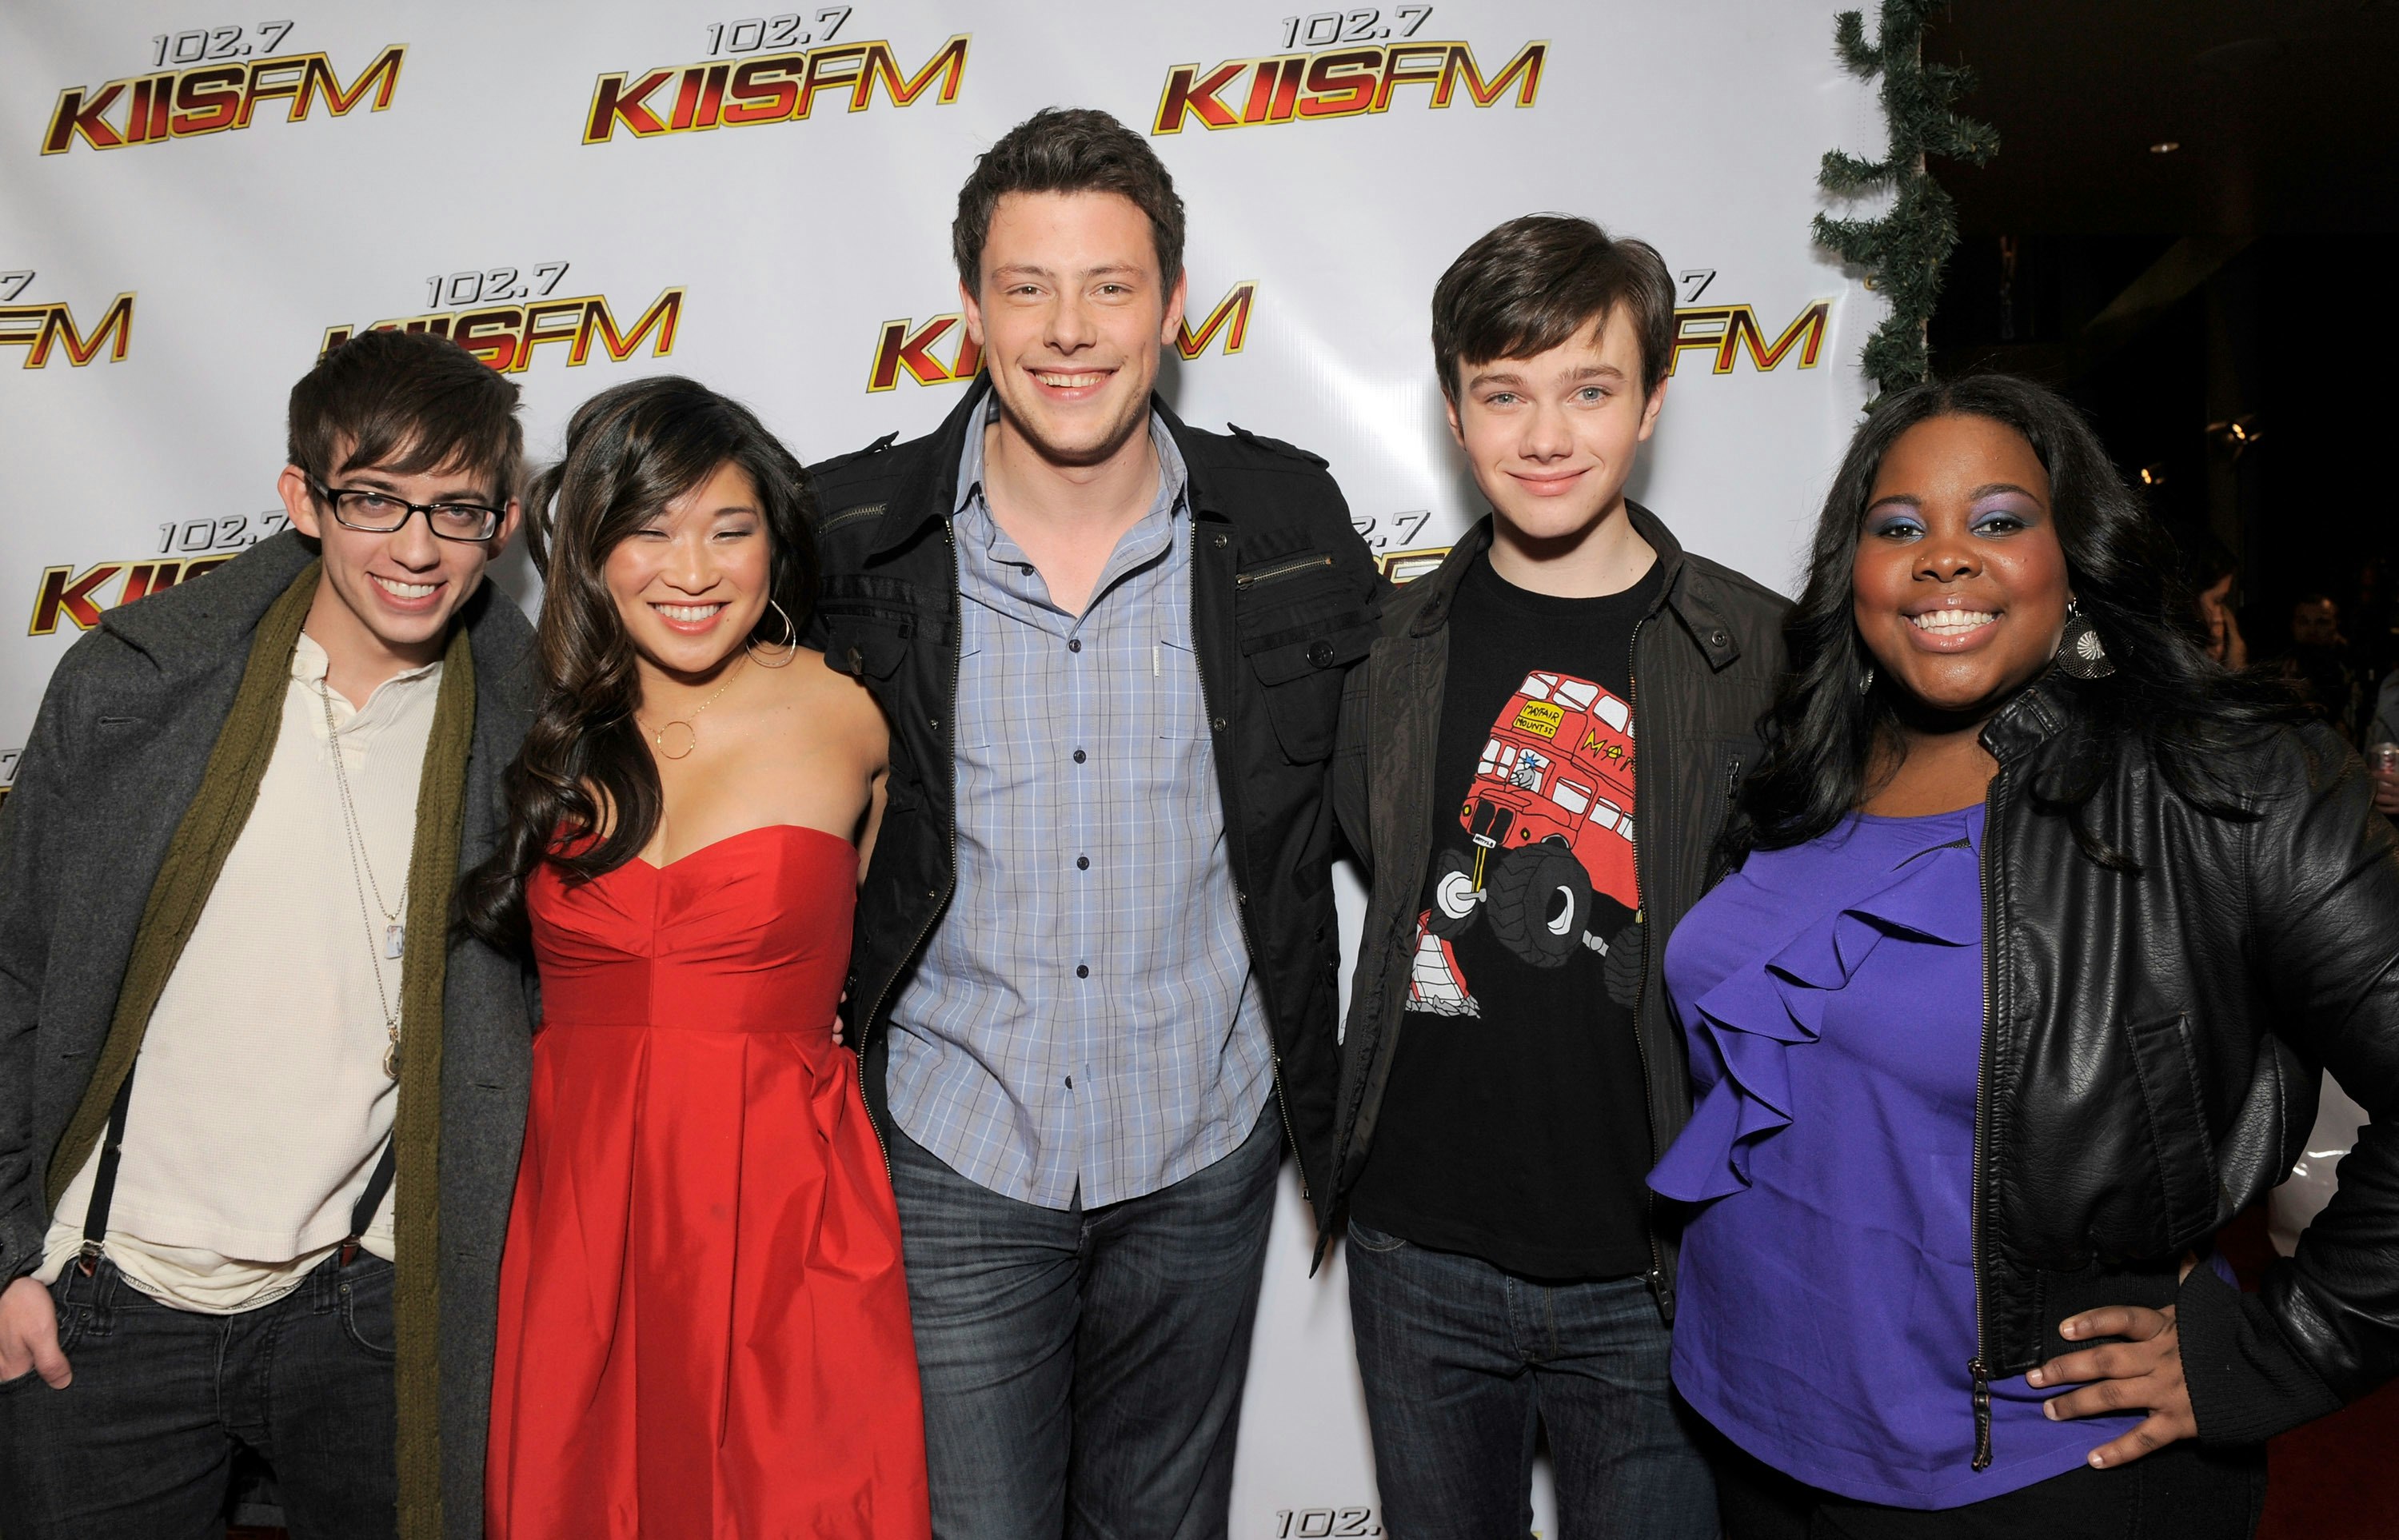 Kevin McHale, Jenna Ushkowitz, Cory Monteith, Chris Colfer og Amber Riley var alle stjerner i tv-serien "Glee".&nbsp;
